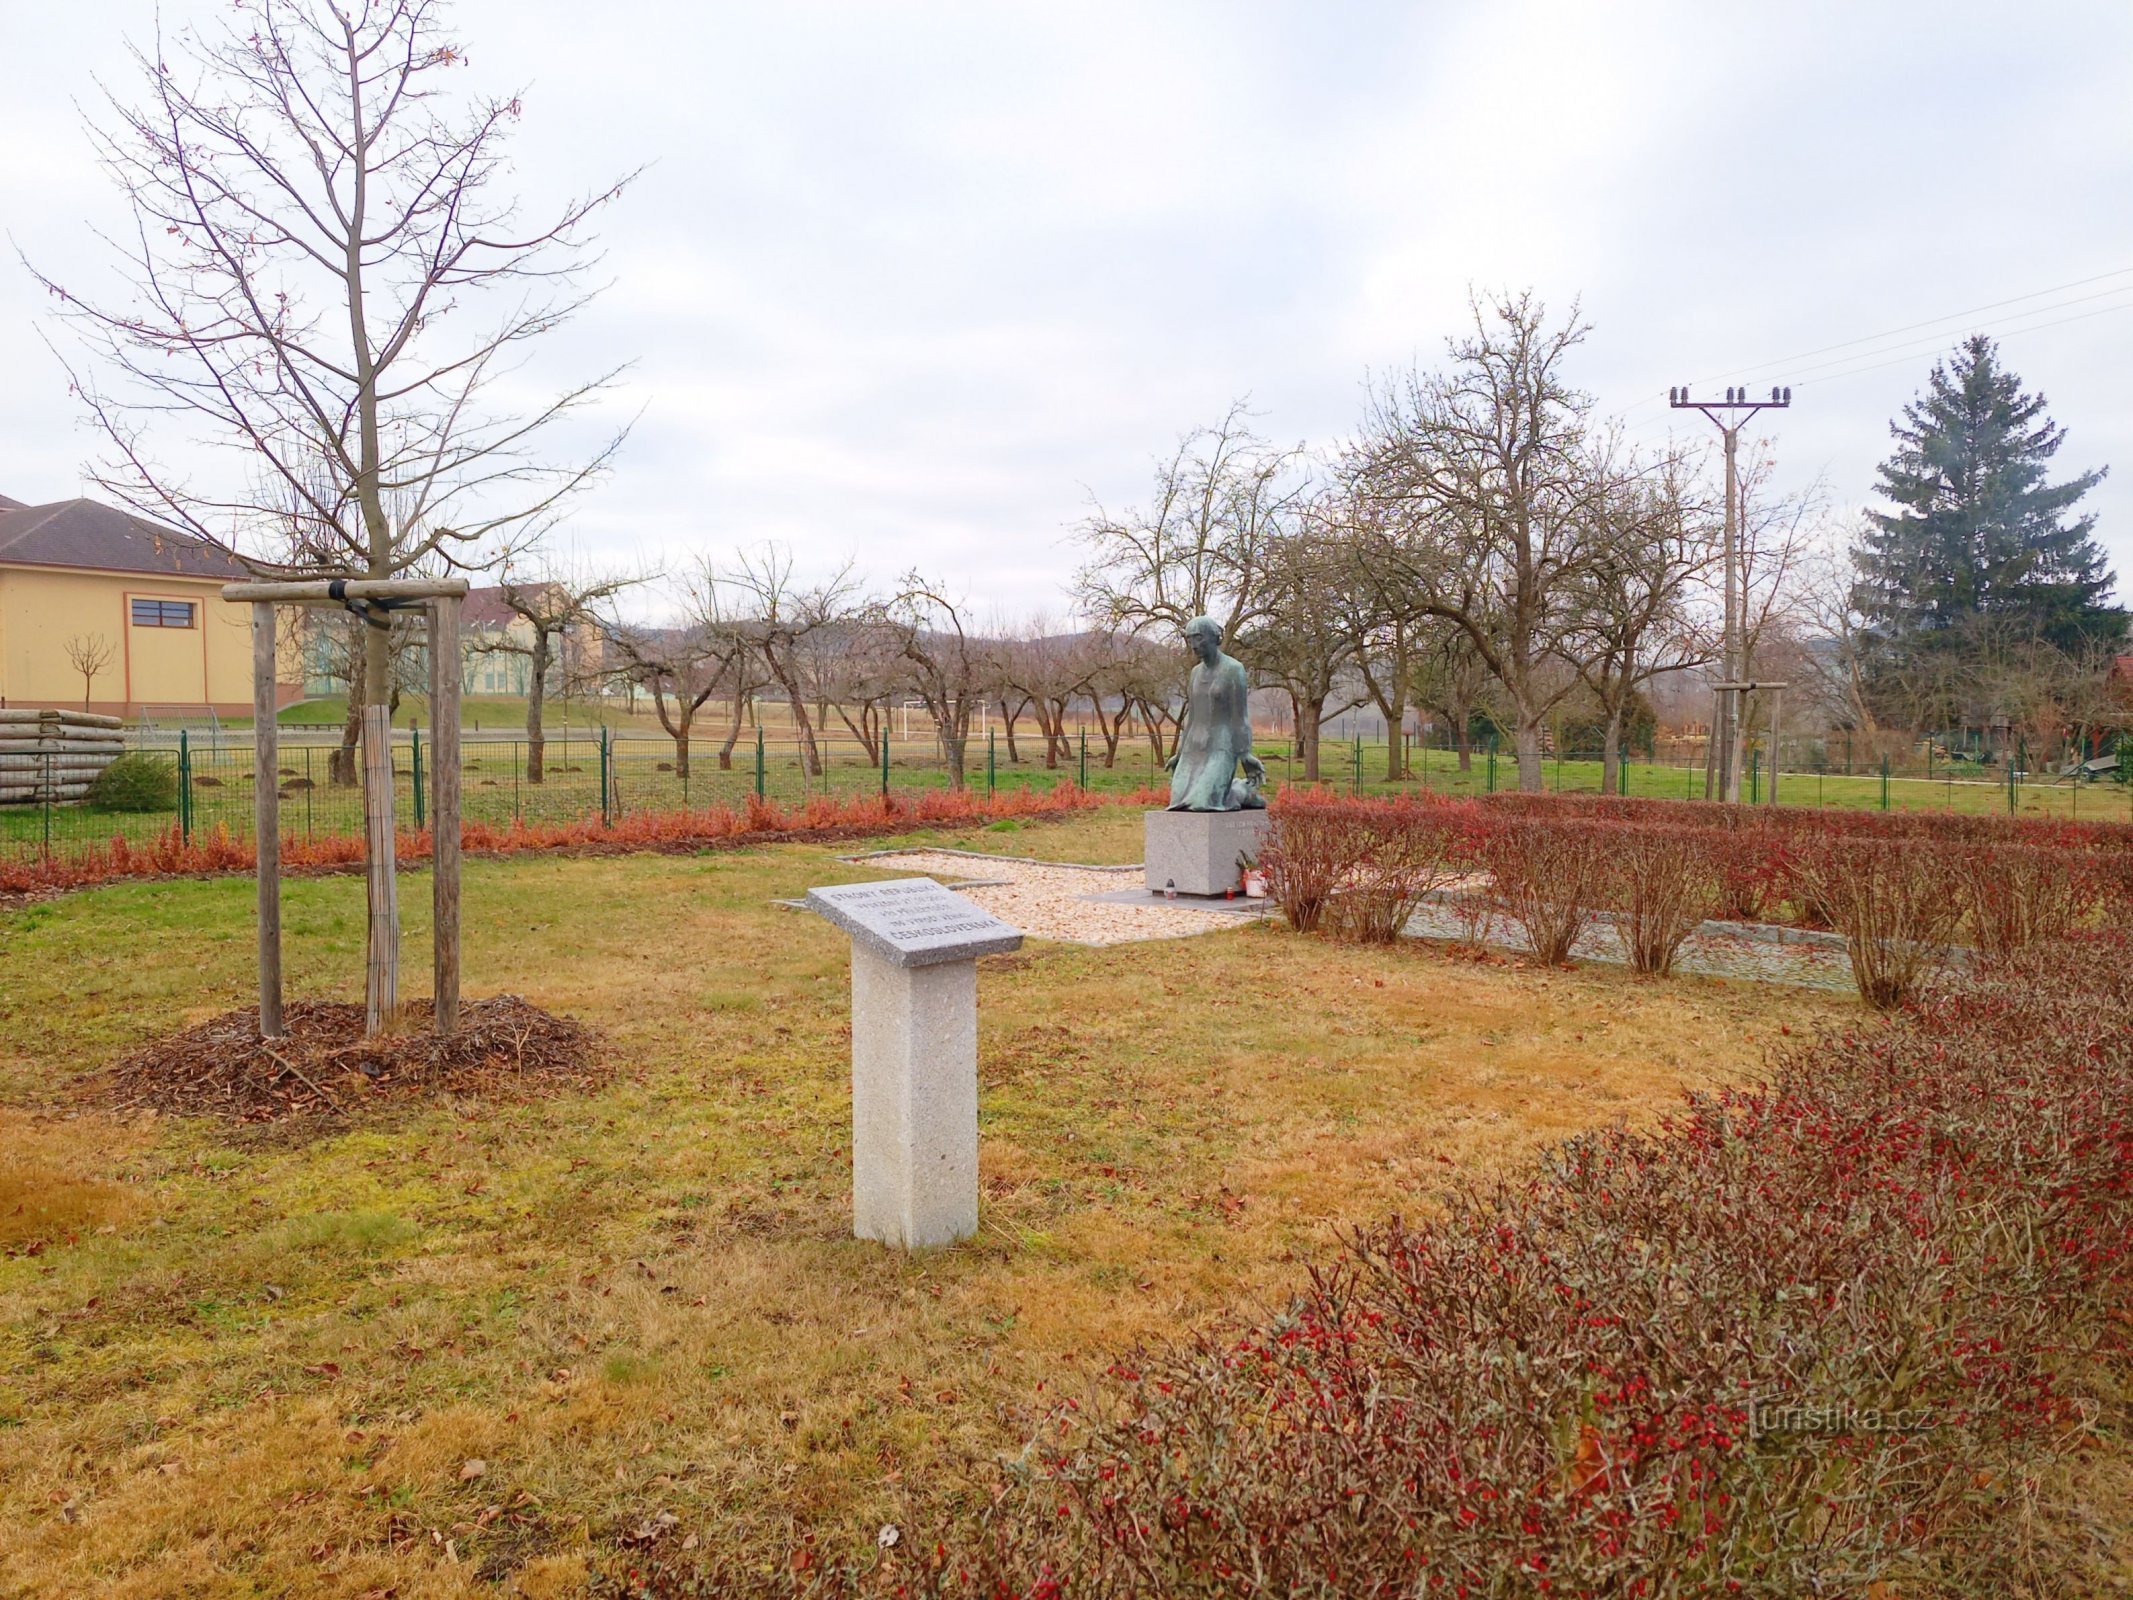 2. Monumentul victimelor războiului de la Sedlec